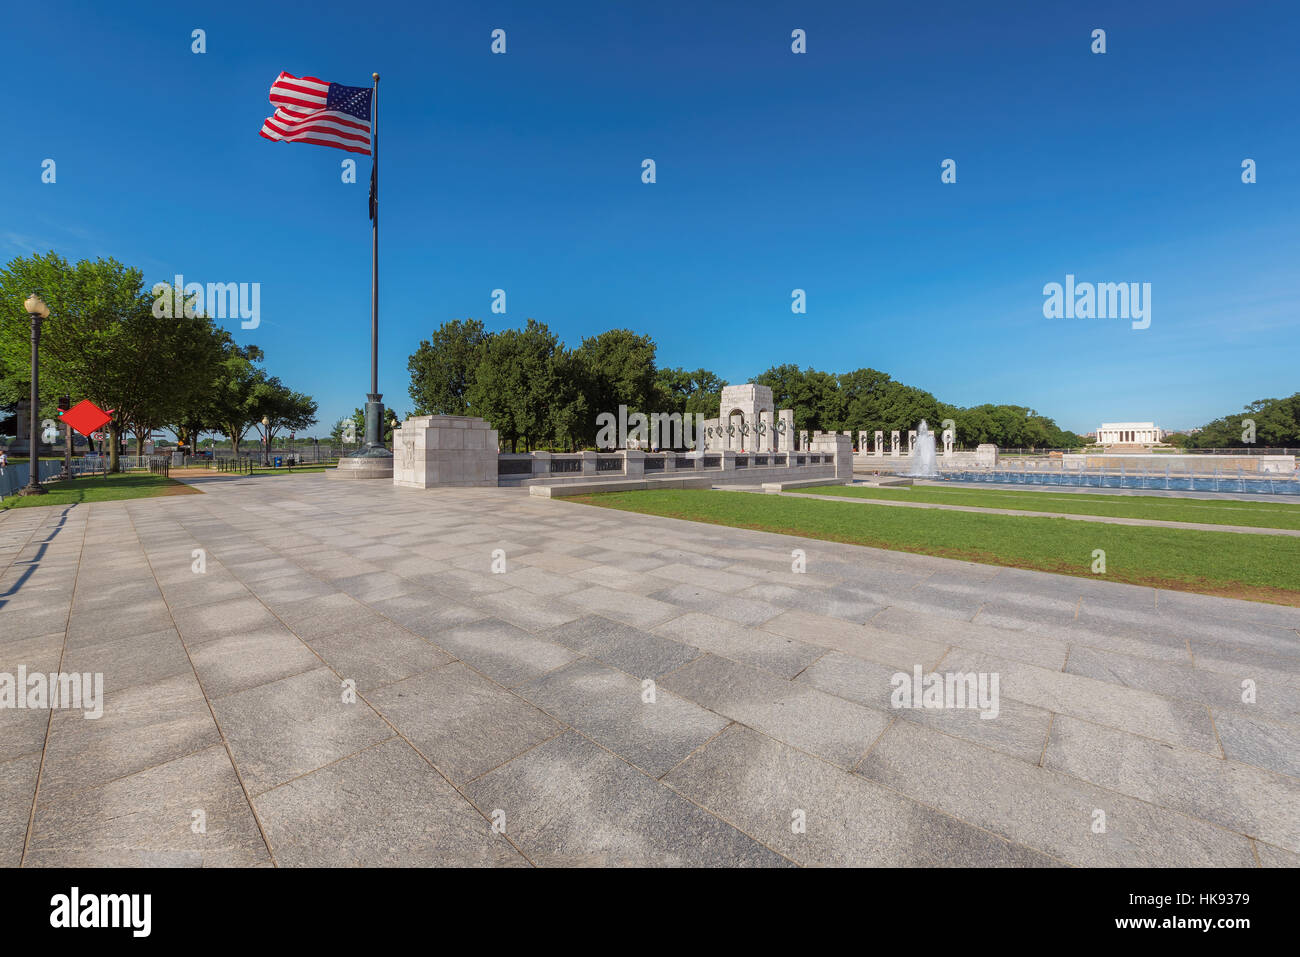 Visualizzare il memoriale di guerra, il Lincoln Memorial e la bandiera americana su una mattina d'estate, Washington DC. Foto Stock